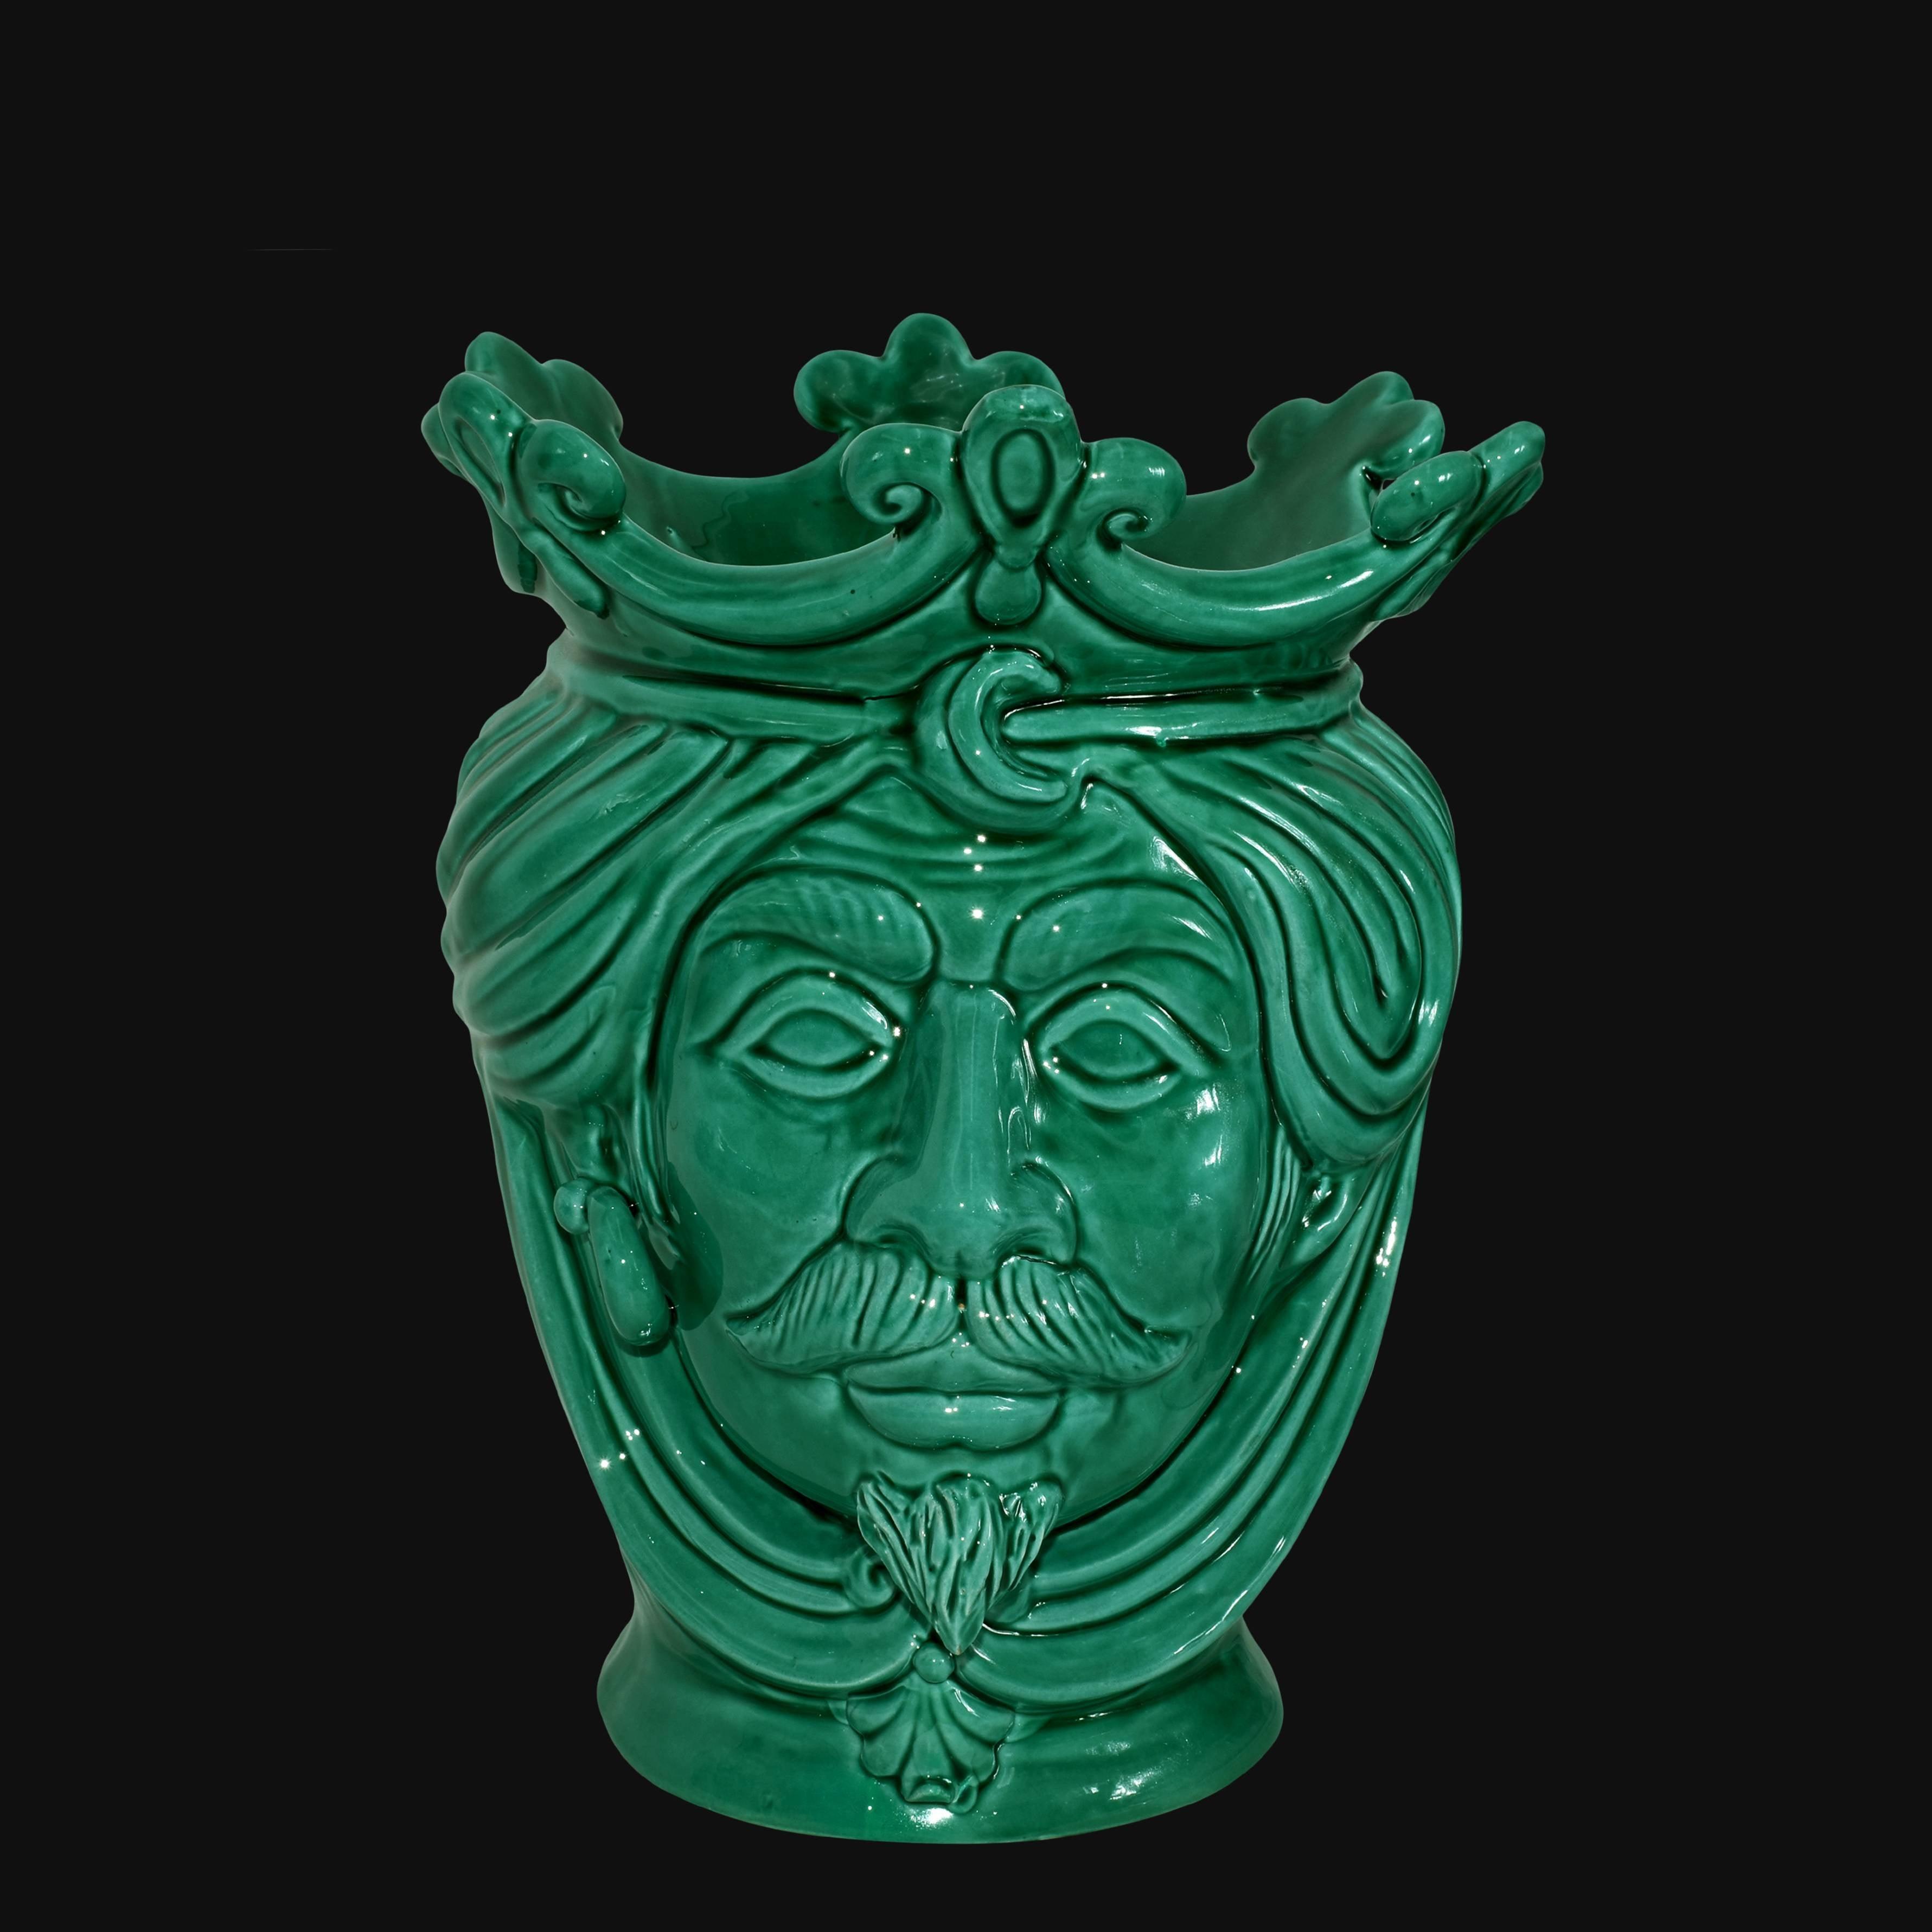 Testa h 25 liscia Verde Smeraldo maschio - Ceramiche di Caltagirone Sofia